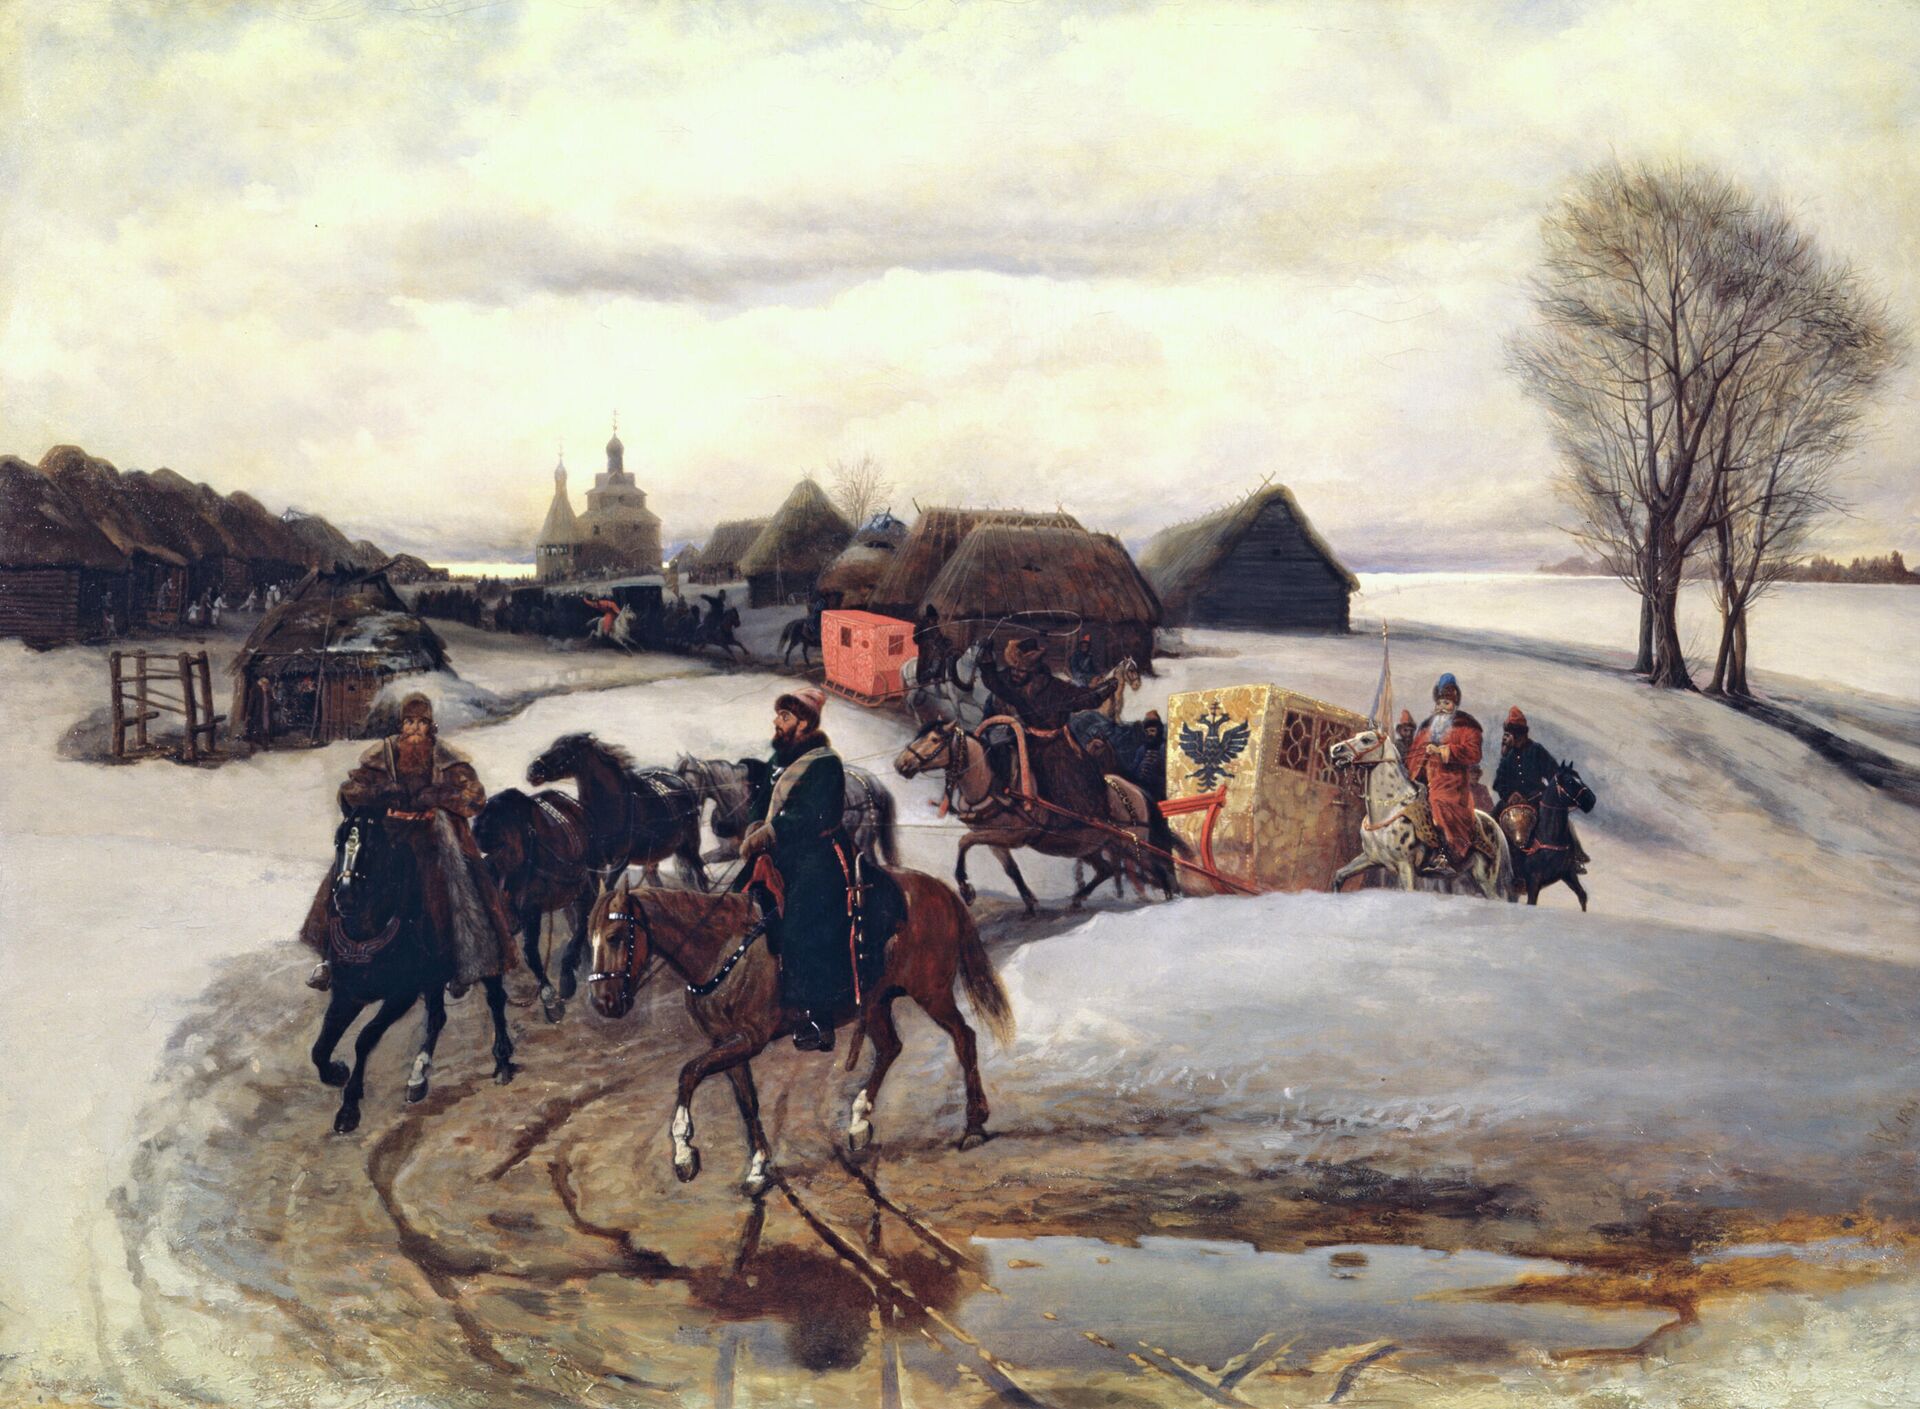 Картина 18 века русских художников с описанием